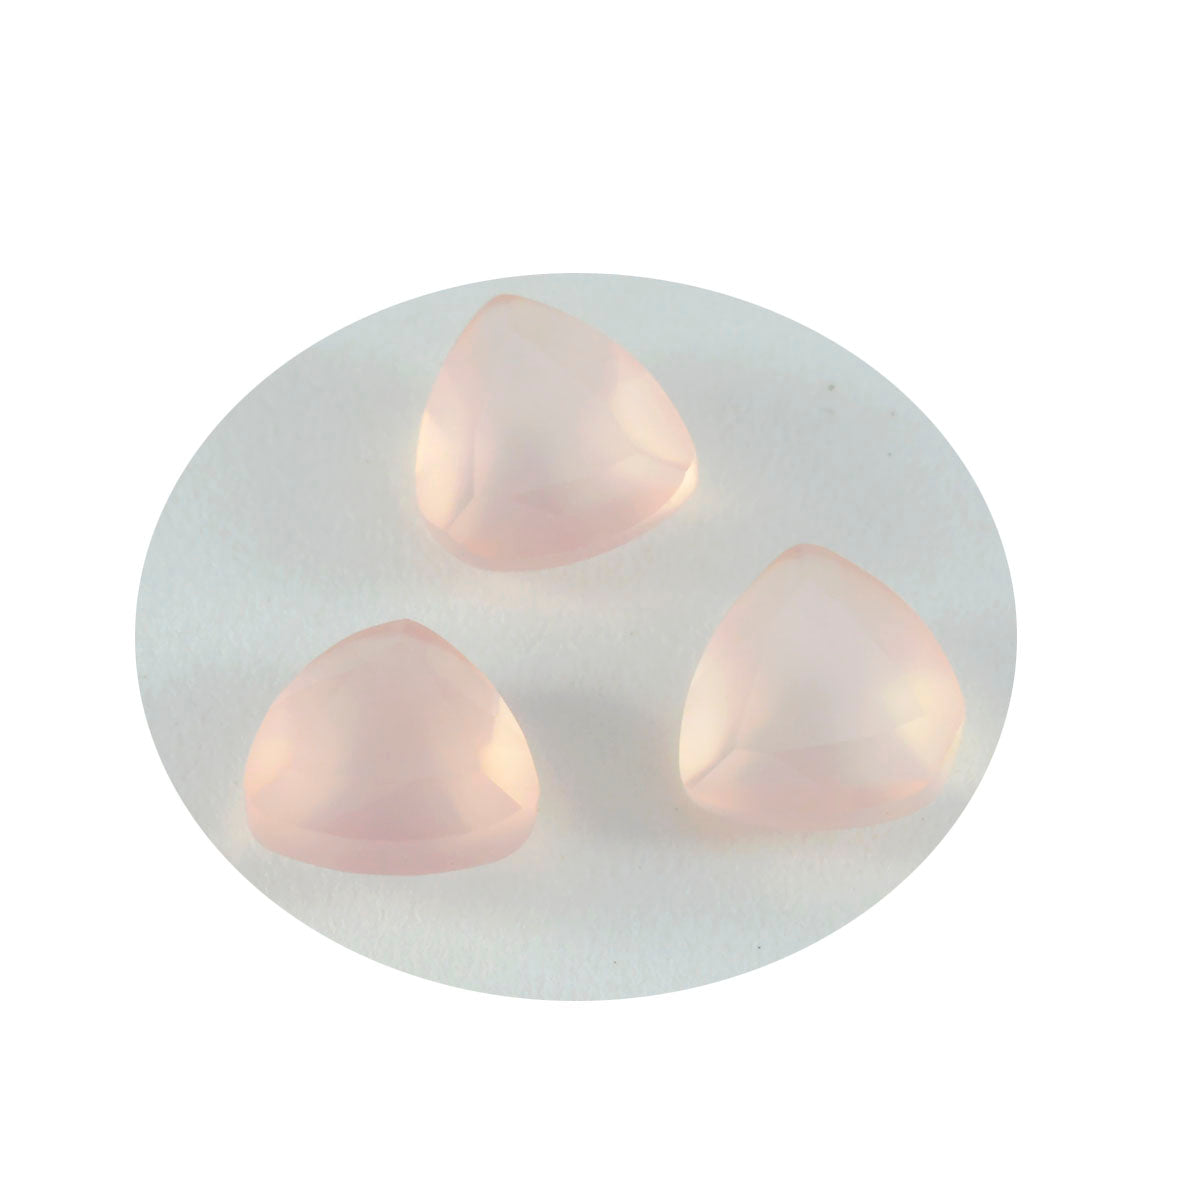 riyogems 1 шт. розовый кварц ограненный 13x13 мм форма триллиона хорошее качество драгоценный камень